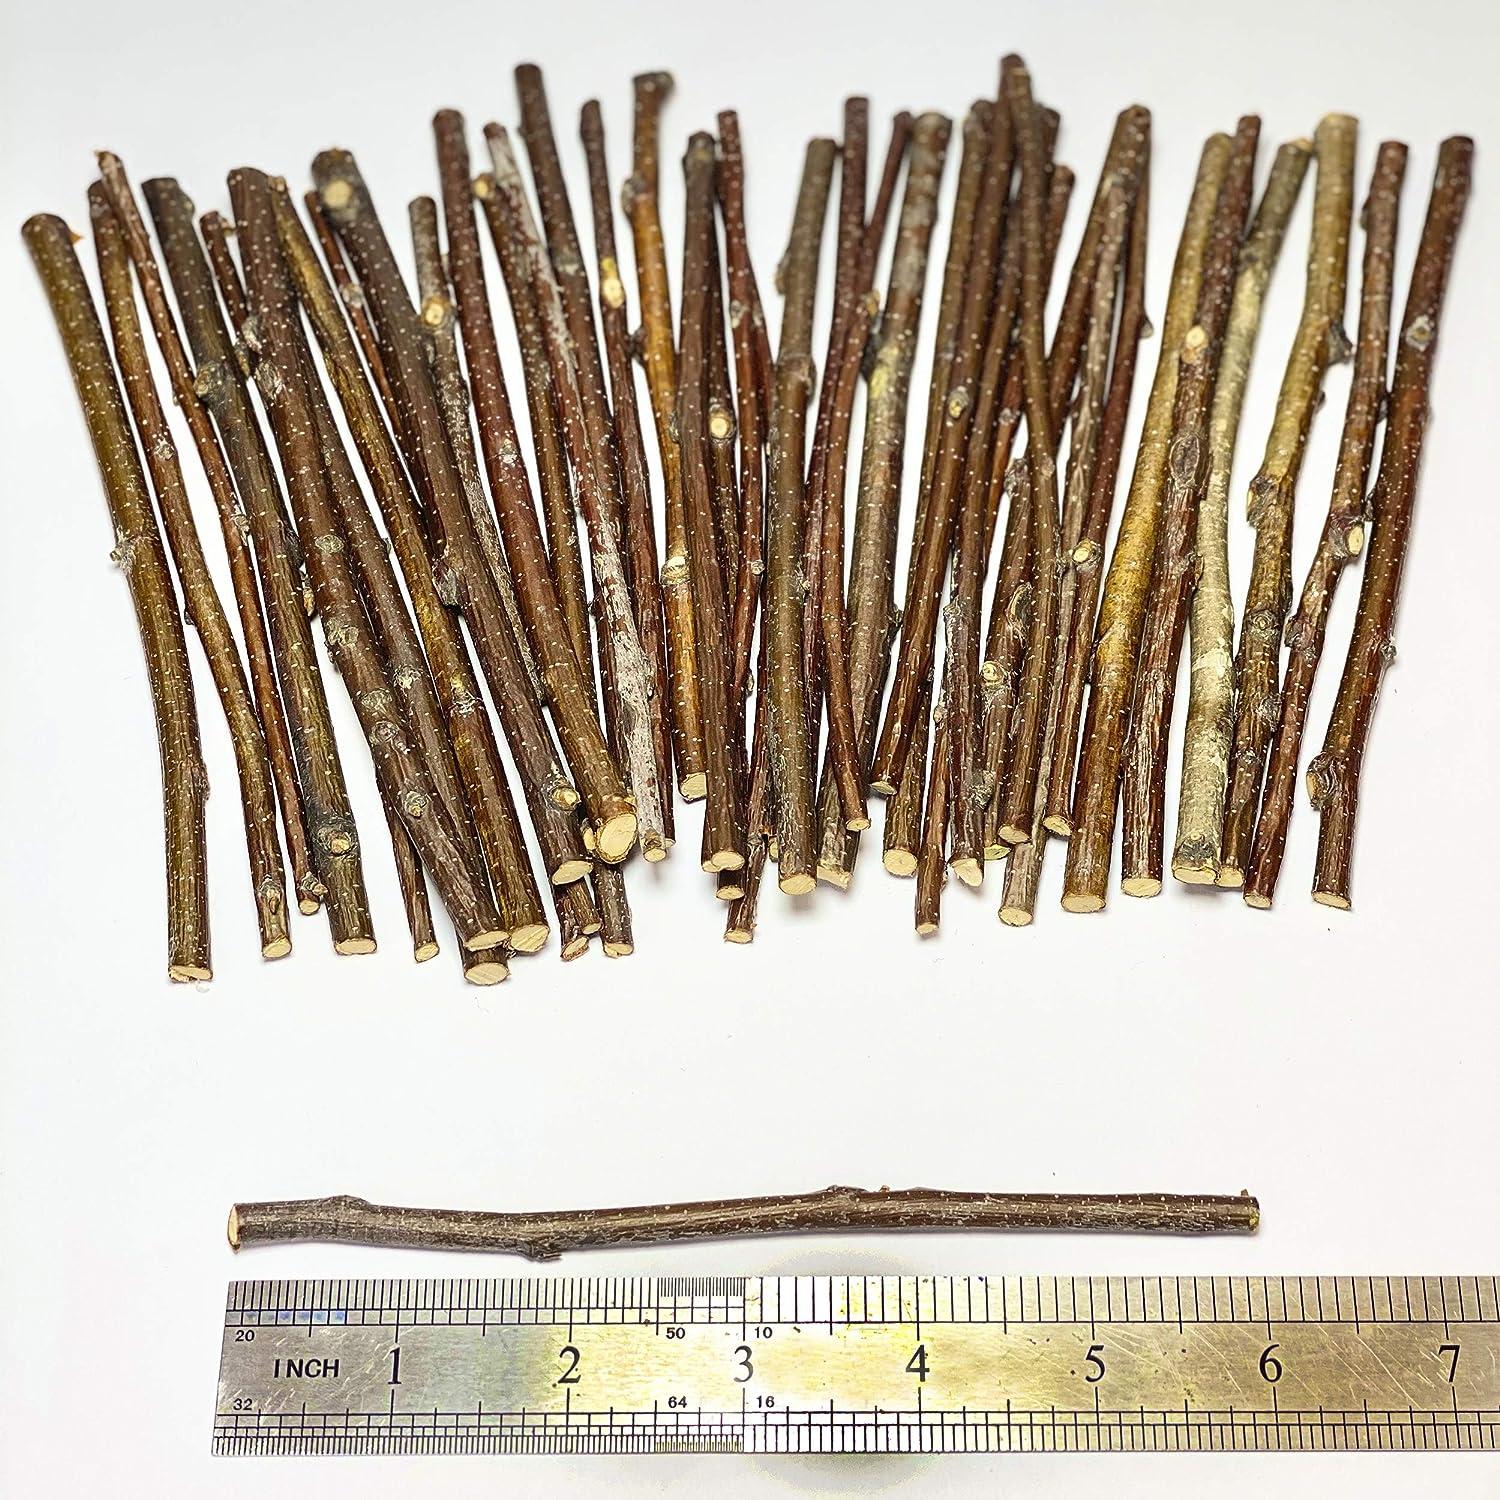 120 Gram - Wood Sticks for Crafts - 6 Inch Birch Wood Craft Sticks